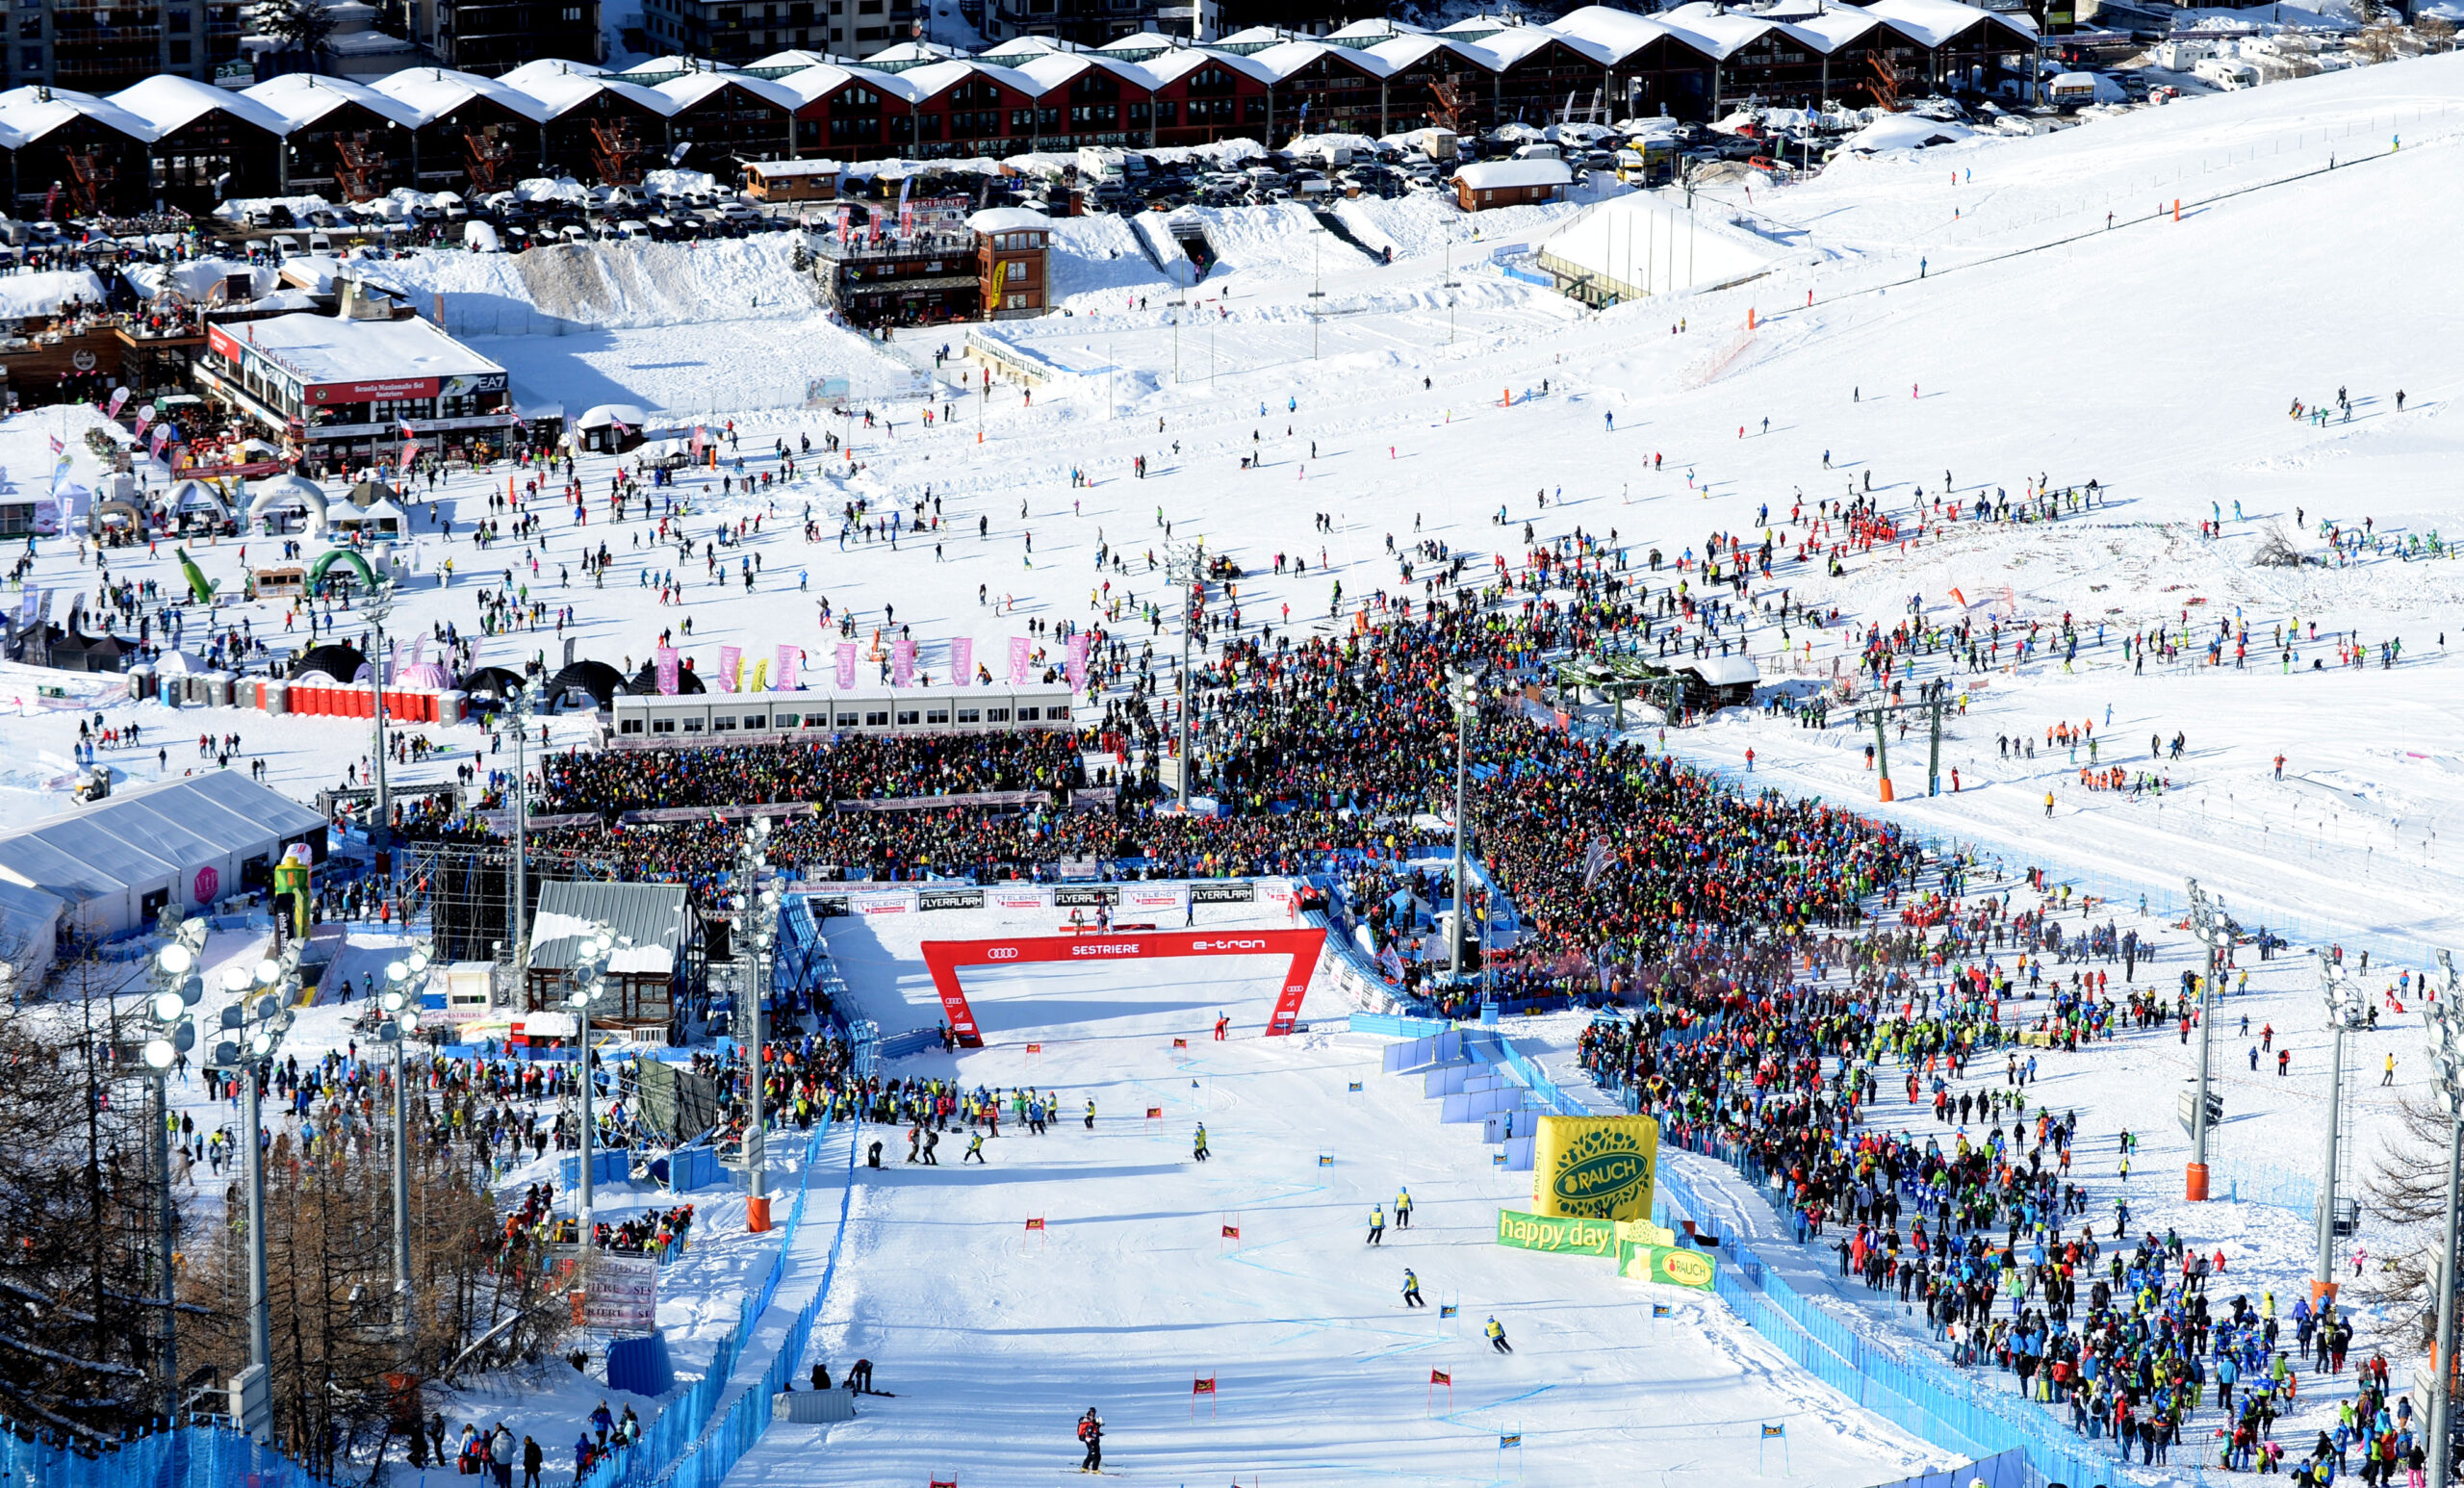 Il programma delle gare settimanali: lo sci alpino femminile approda a Sestriere, uomini a Val d’Isère